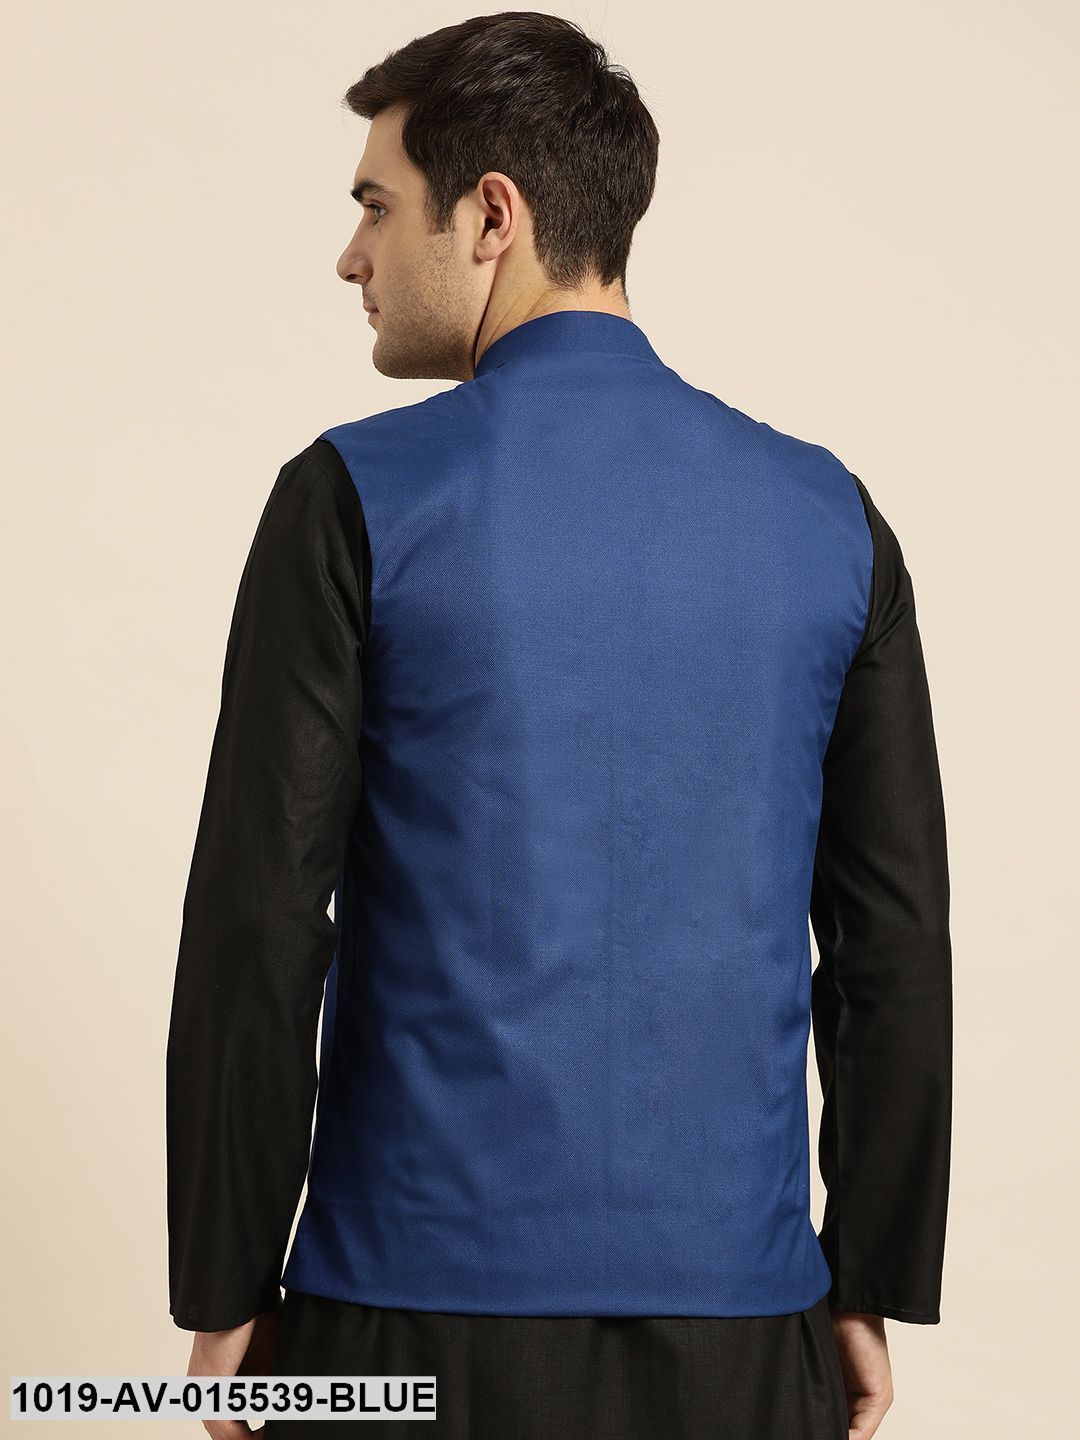 Men's Cotton Blend Royal Blue Solid Nehru Jacket - Sojanya